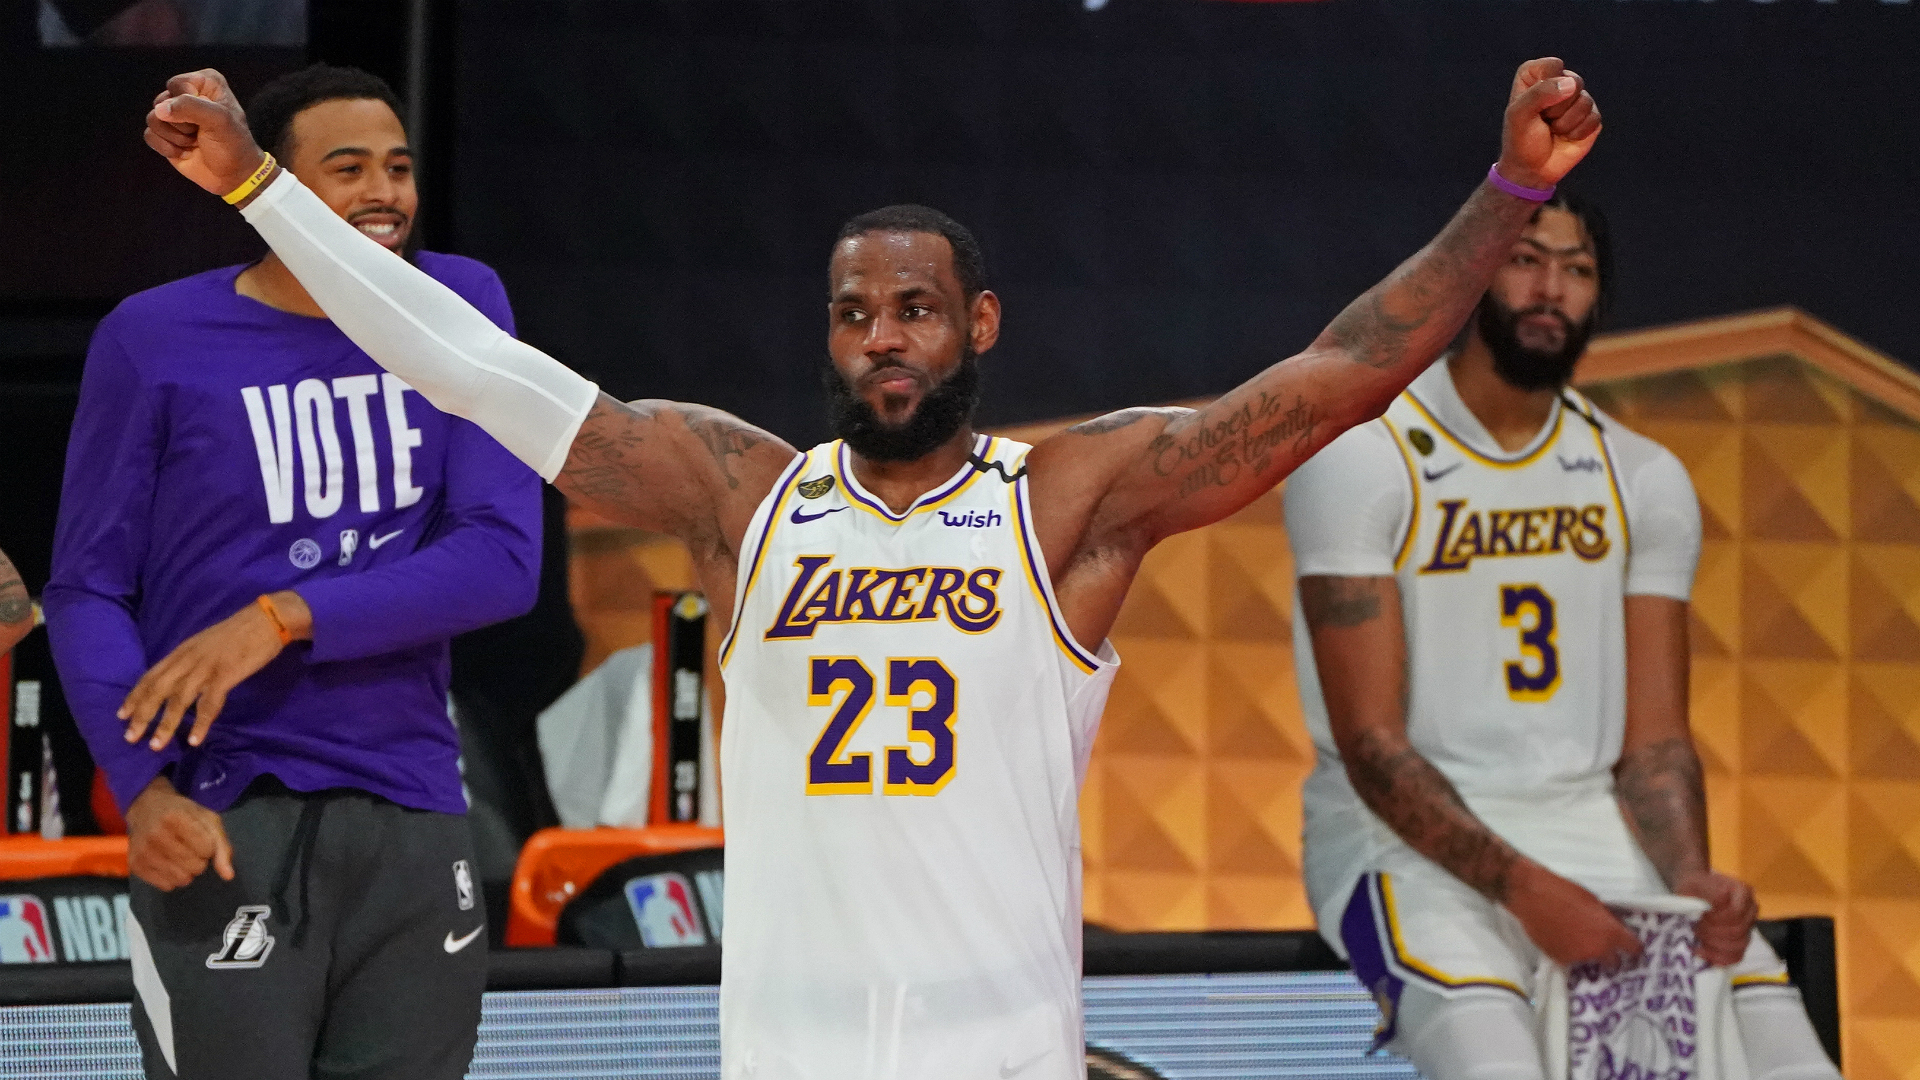 Los Angeles Lakers campeão da temporada 2019/20 da NBA - 11/10